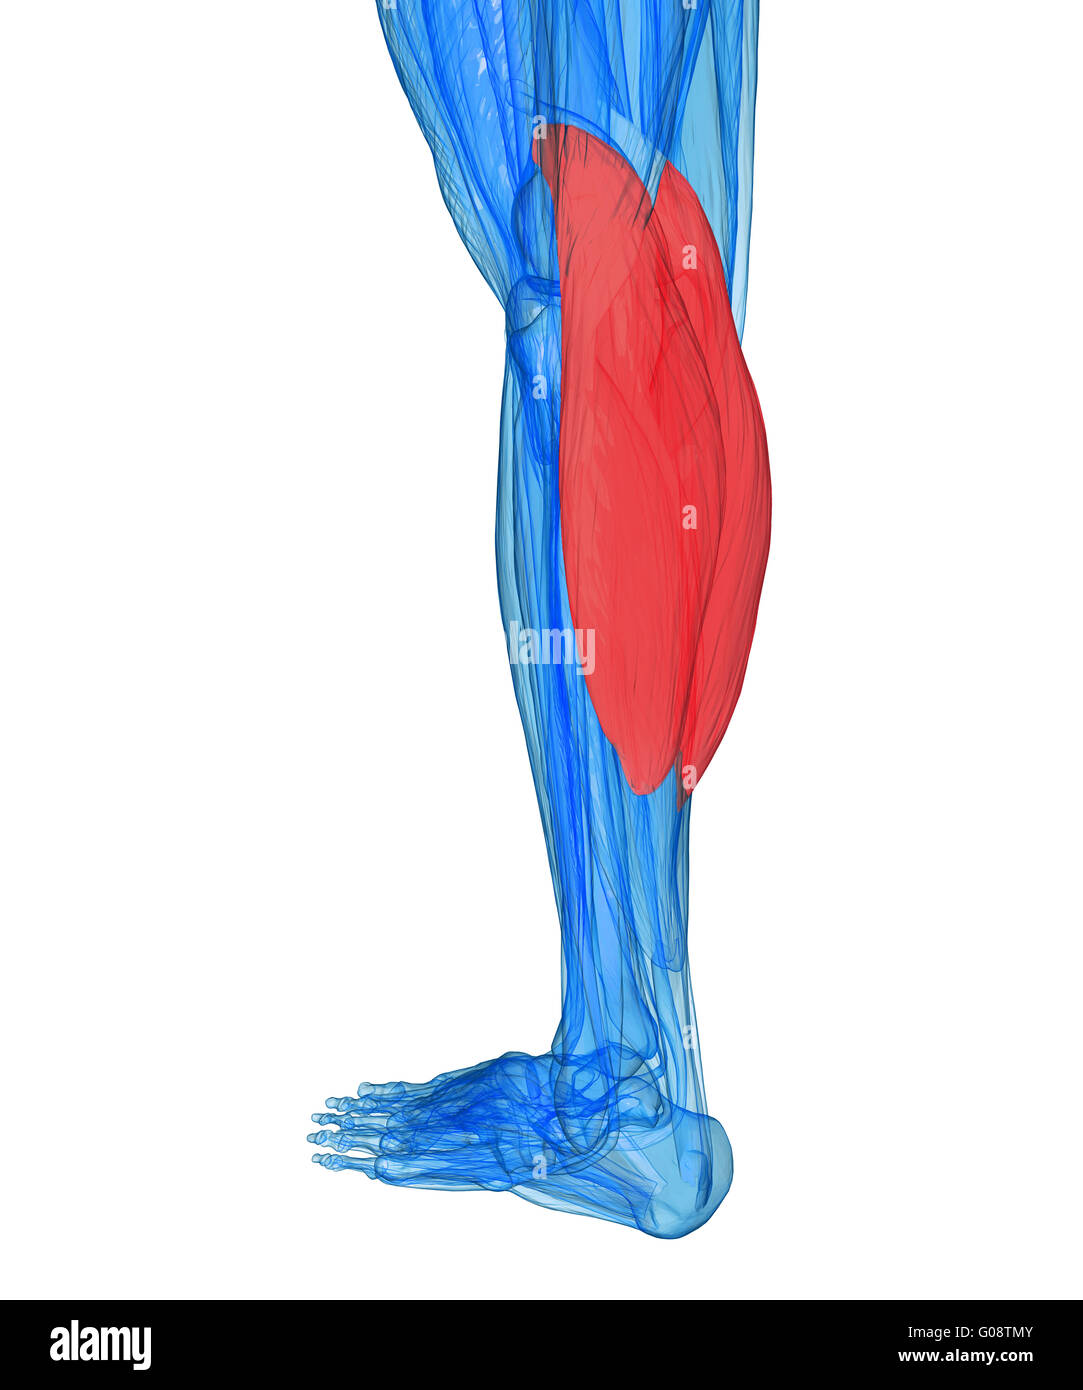 Veaux - Muscles anatomie Banque D'Images